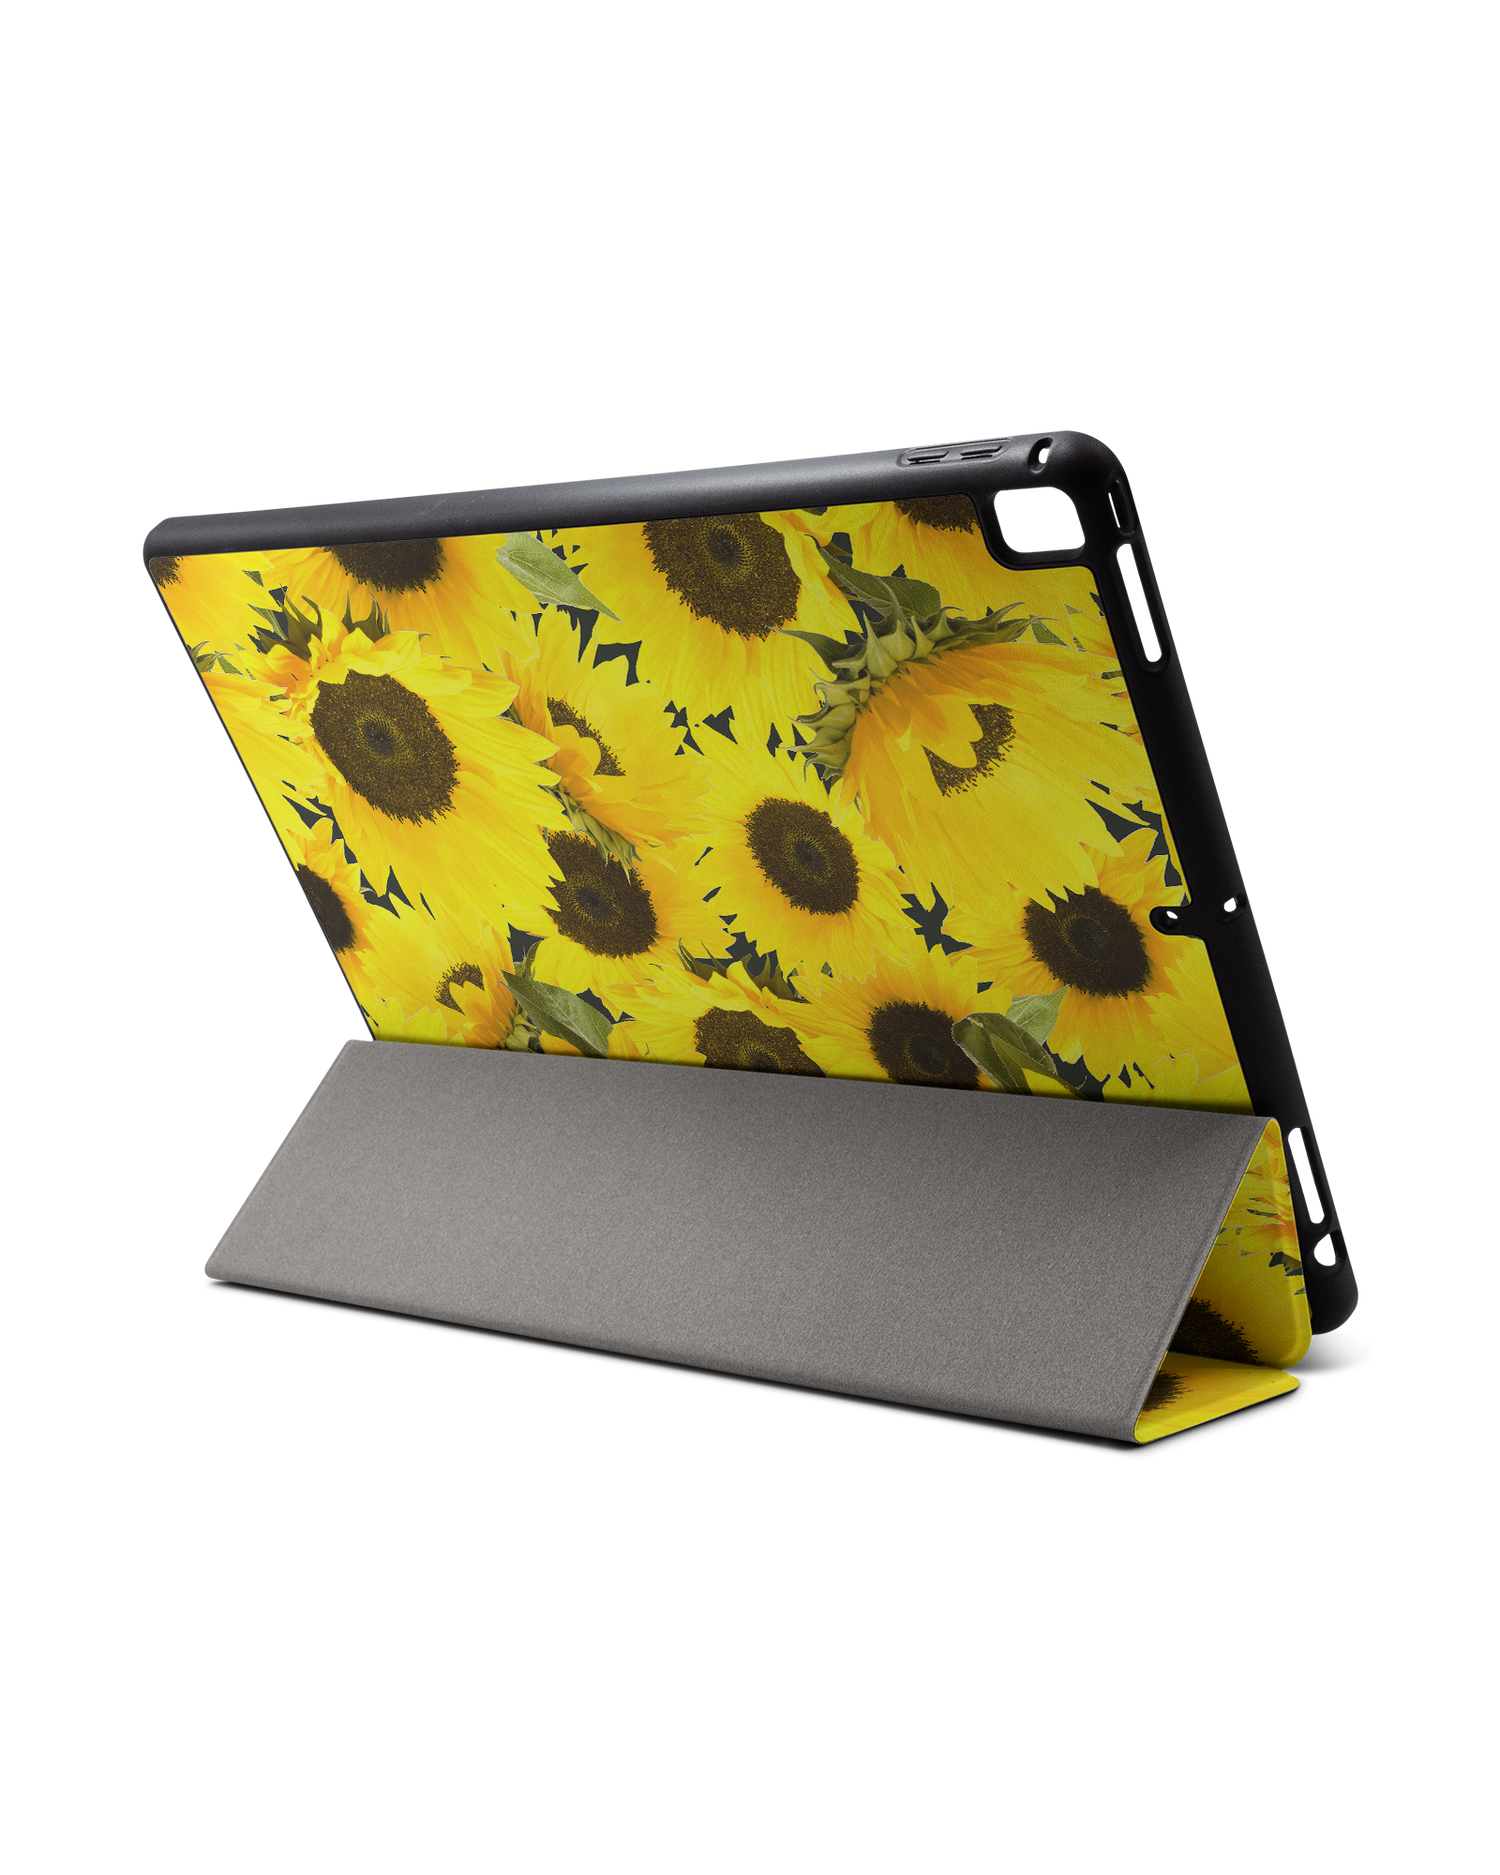 Sunflowers iPad Hülle mit Stifthalter für Apple iPad Pro 2 12.9'' (2017): Aufgestellt im Querformat von hinten